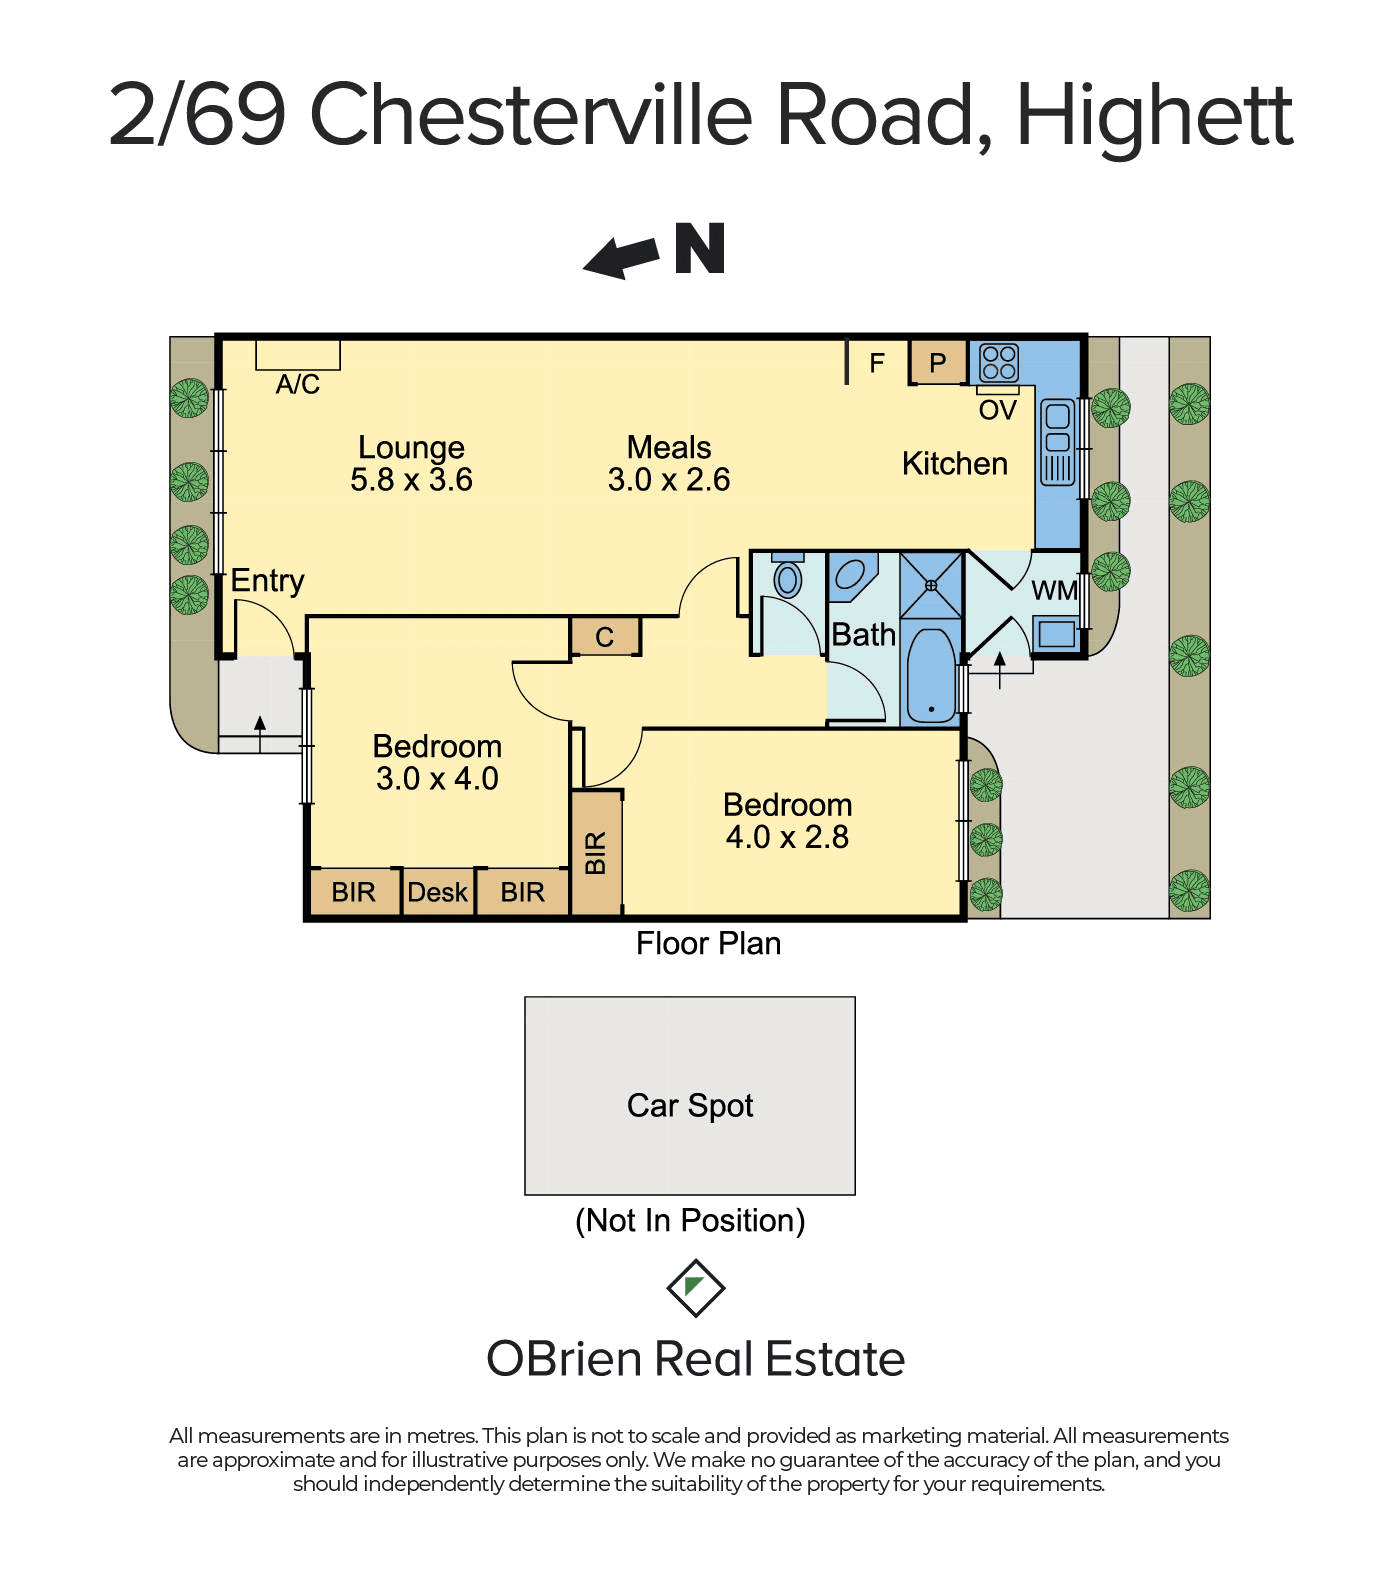 2/69 Chesterville Road, Highett, VIC 3190